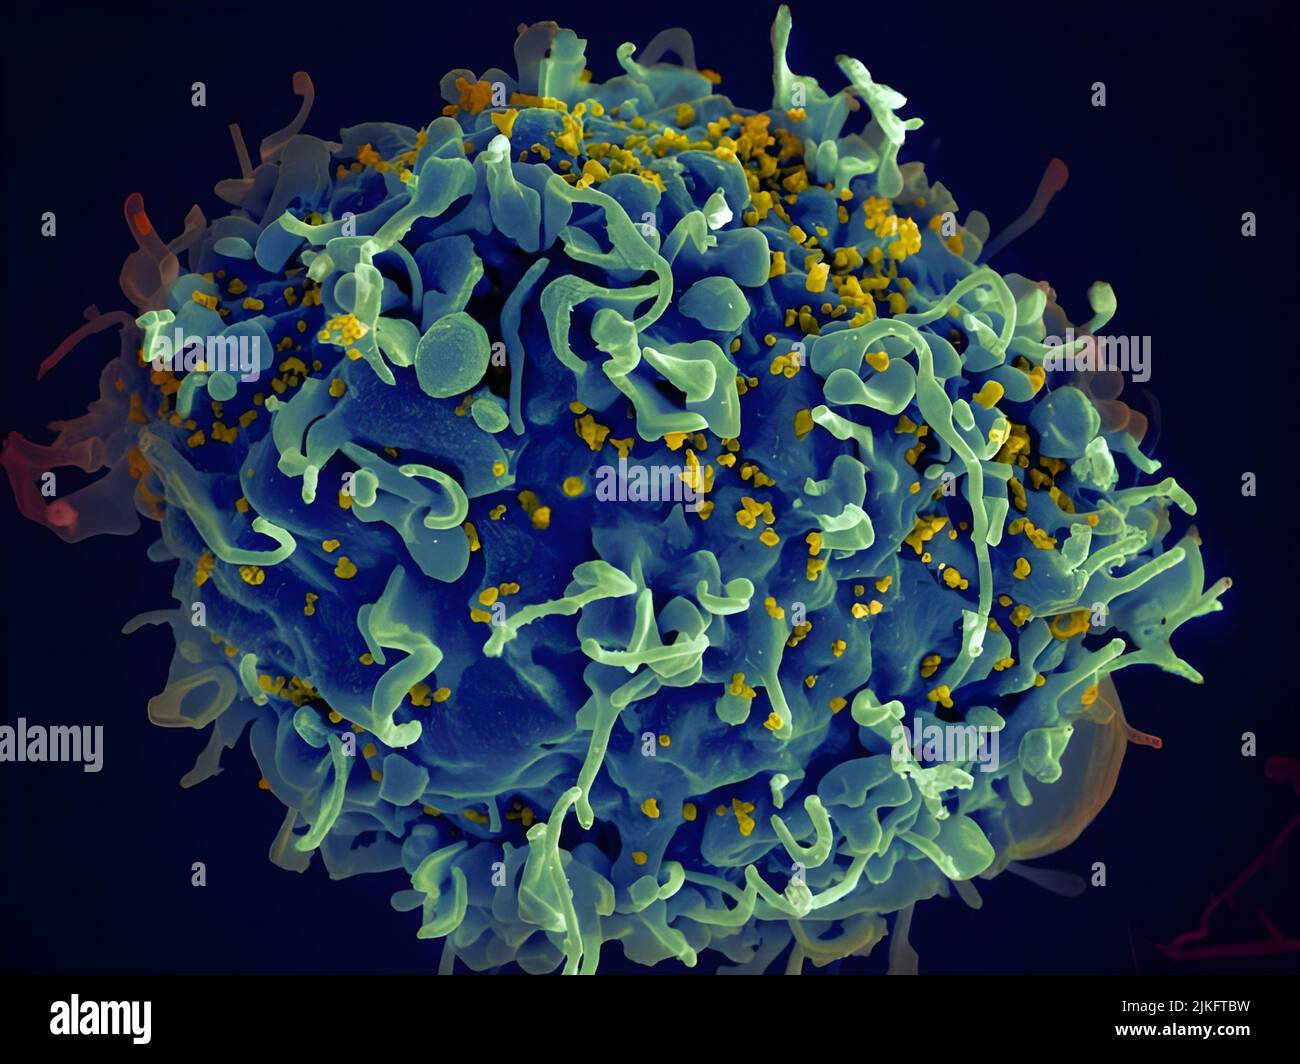 Questa cellula T umana (blu) è attaccata dall'HIV (giallo), il virus che causa l'AIDS. Il virus colpisce le cellule T, che svolgono un ruolo vitale nella risposta immunitaria del corpo contro invasori come batteri e virus. Foto Stock